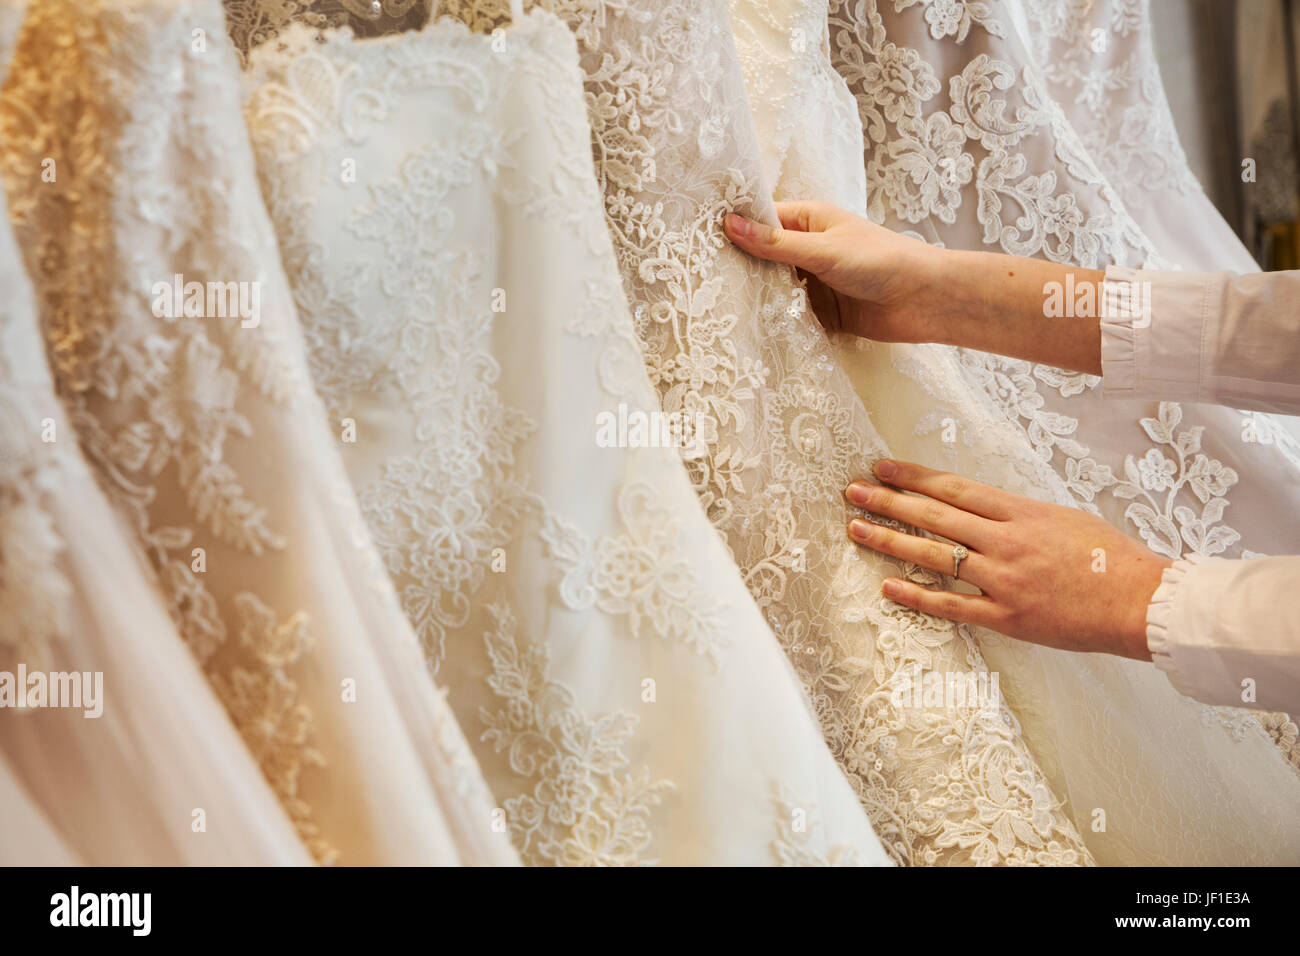 Lignes de robes de sur l'affichage dans une boutique de robe de mariage spécialisés. Close up de jupes, certains avec une dentelle, dans une variété de teintes de couleur Banque D'Images